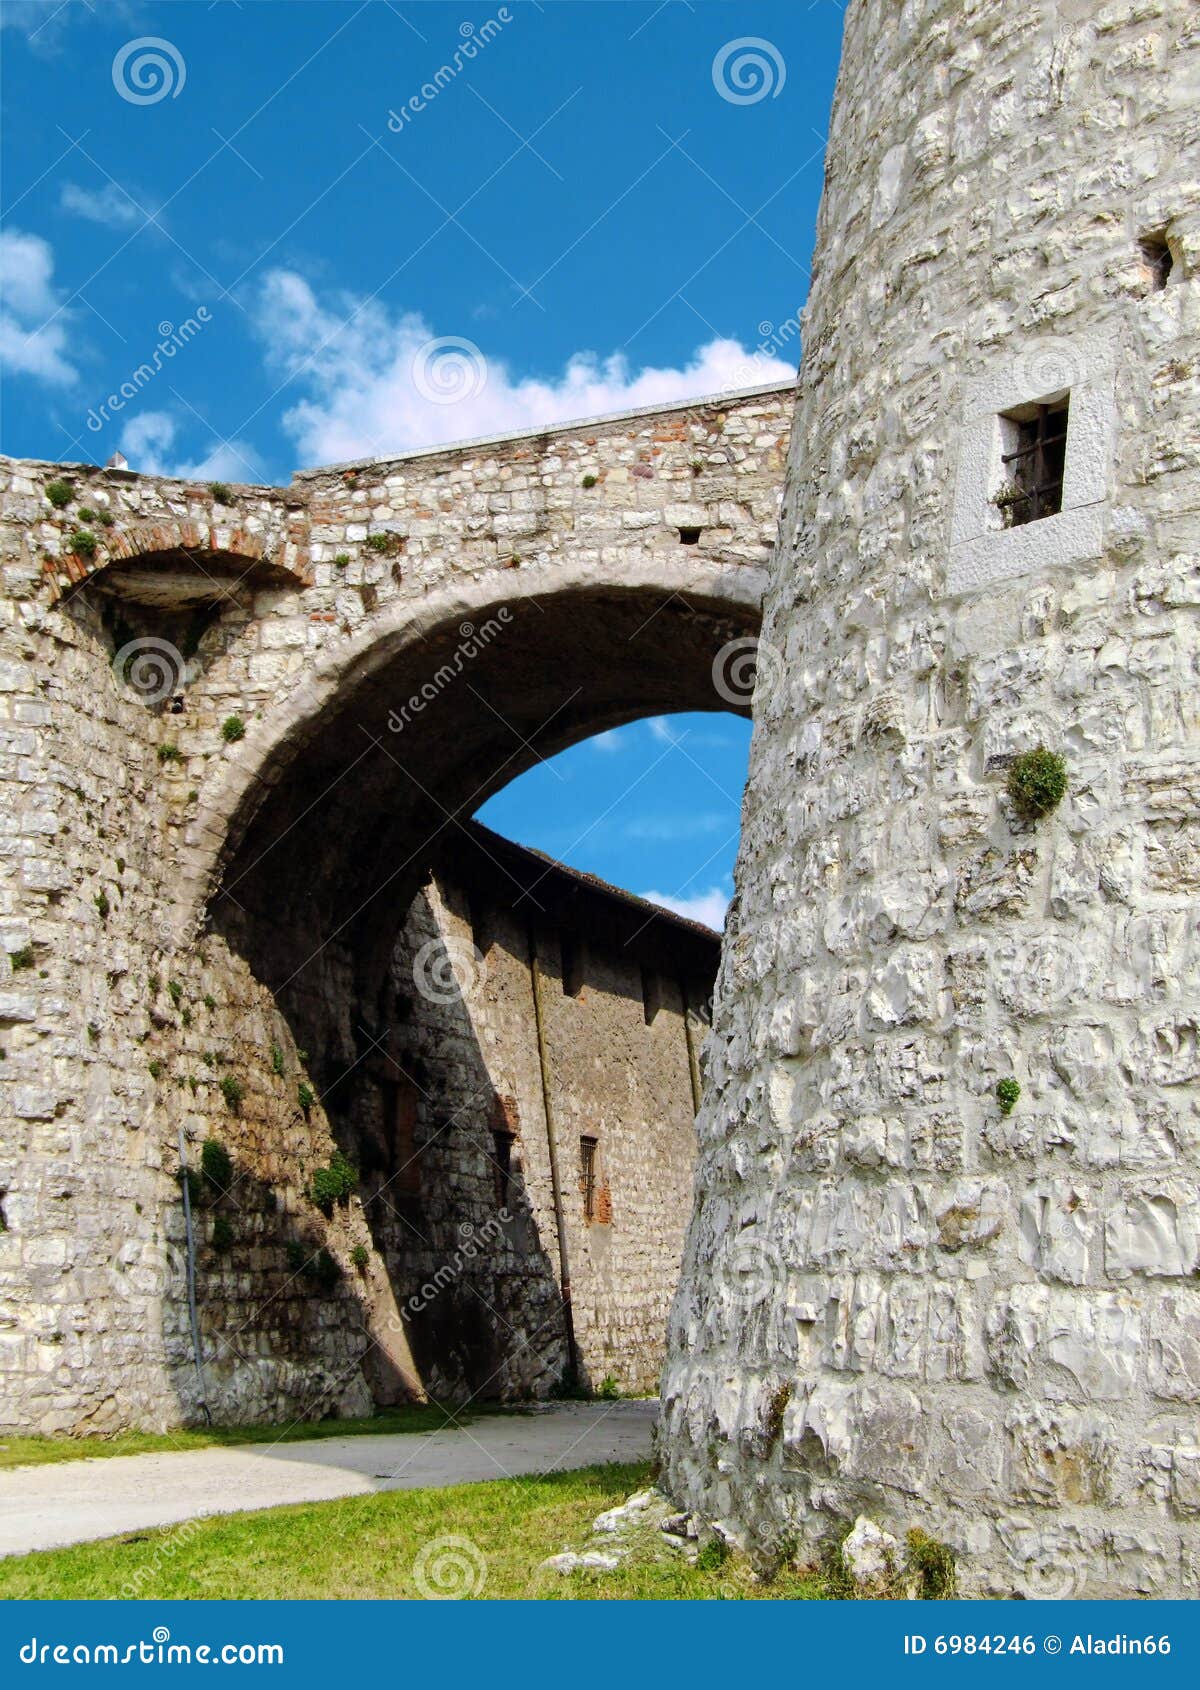 castle of brescia